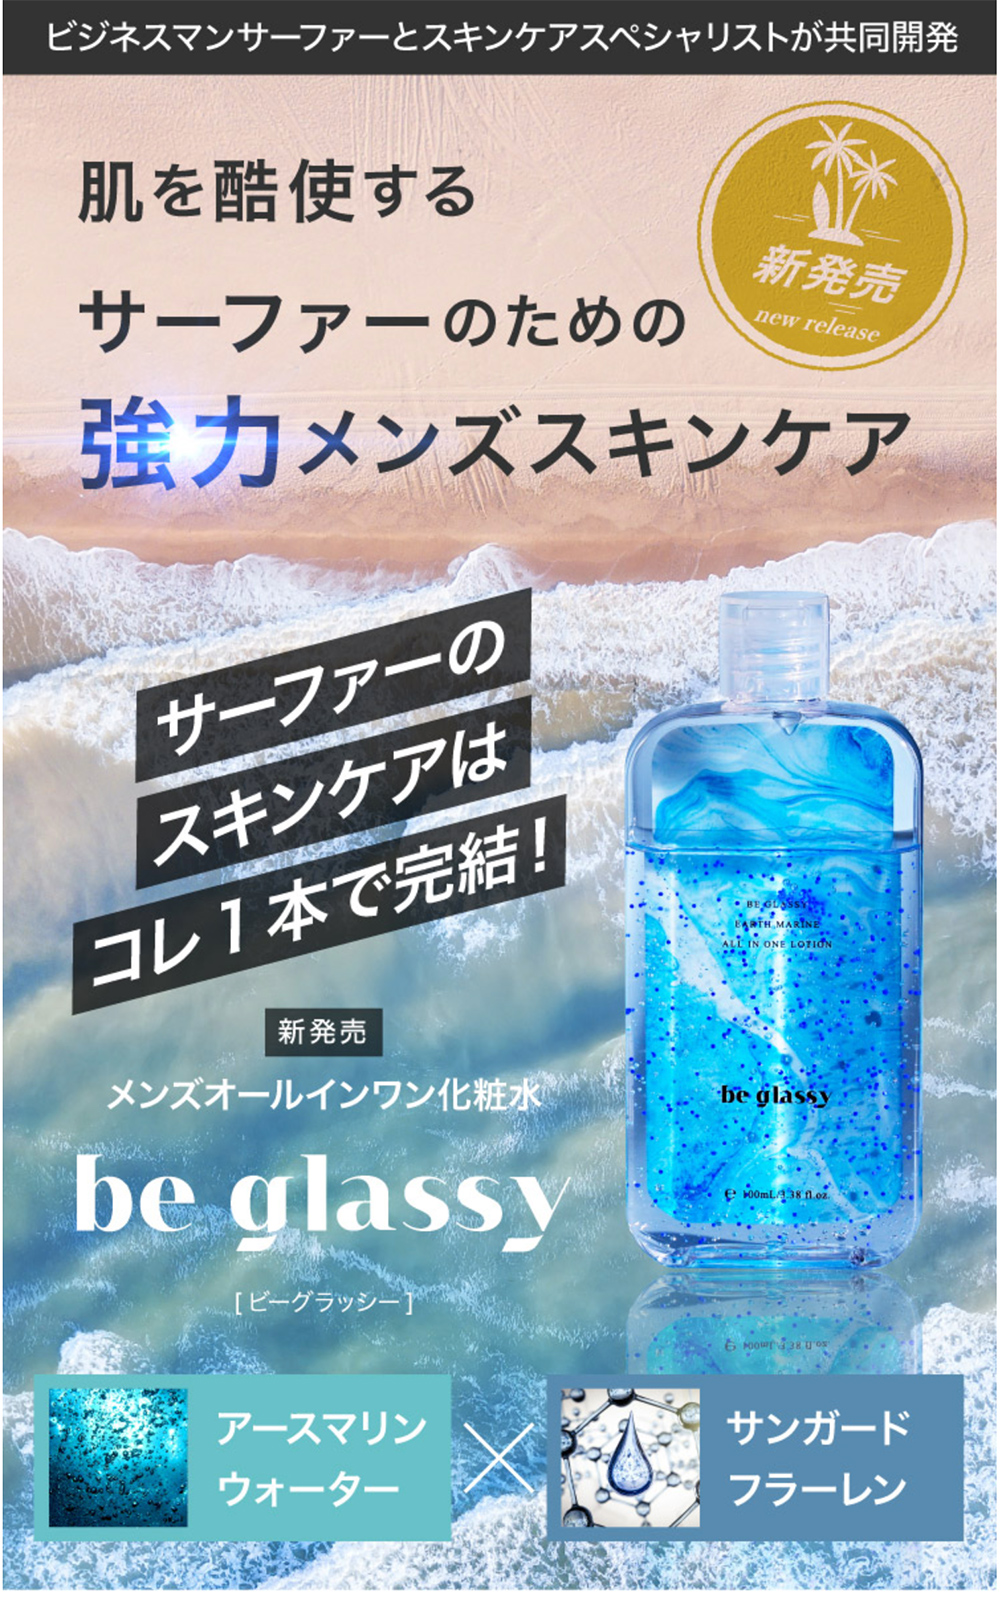 BE GLASSY オールインワン化粧水